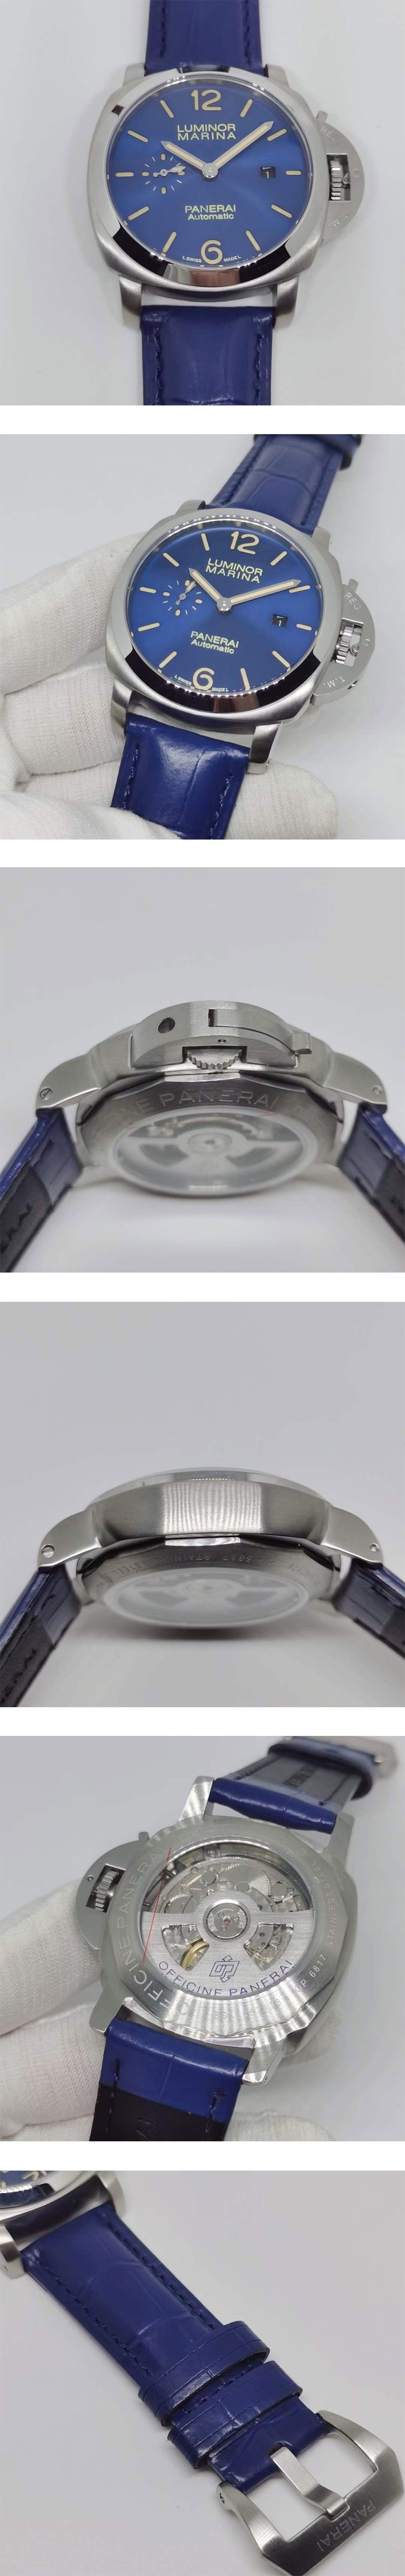 激安腕時計挑戦 パネライコピーPAM01393 ルミノールマリーナ 42mm